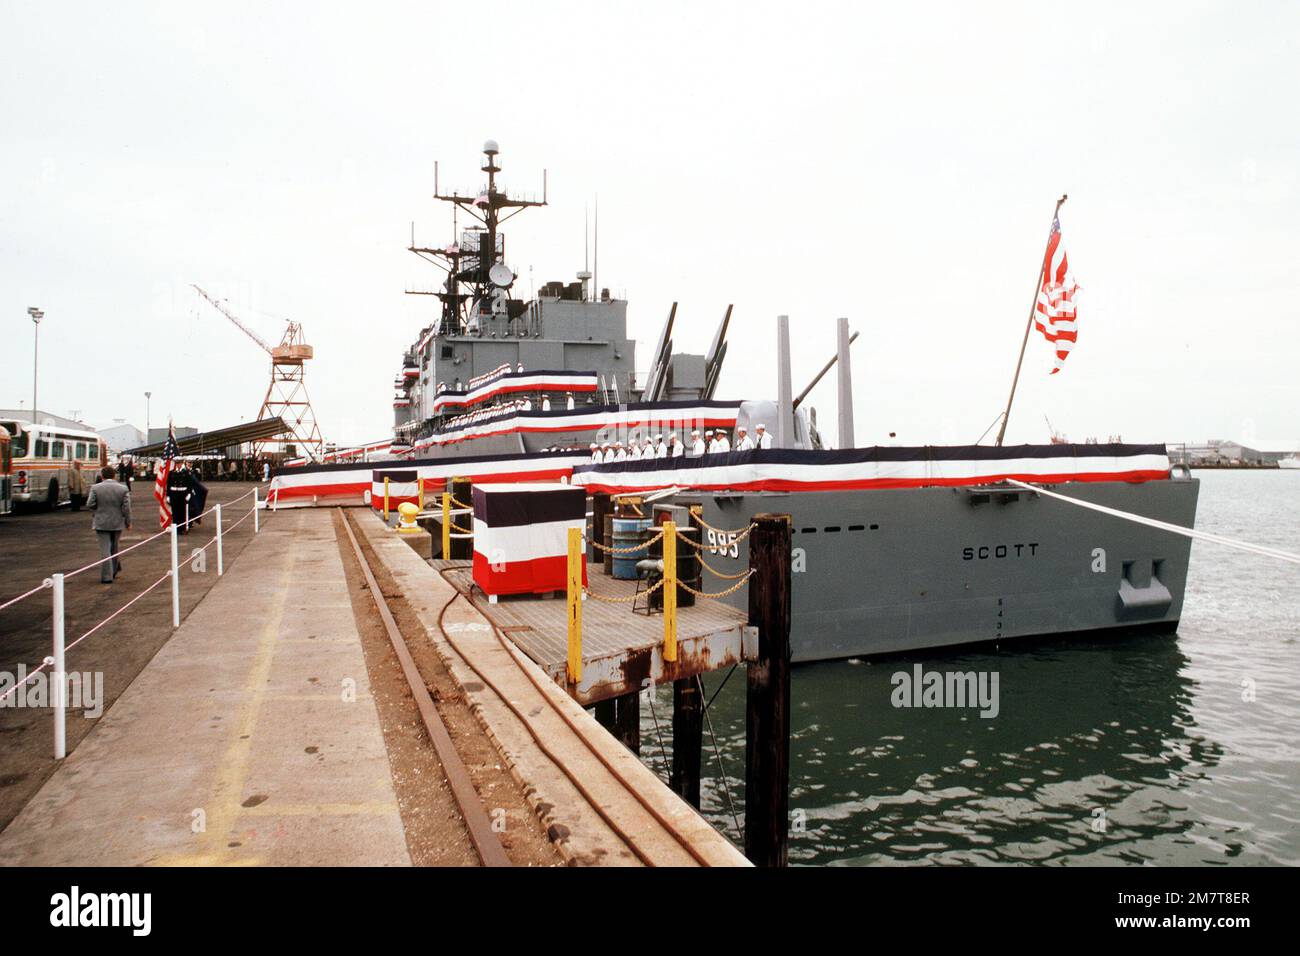 Les membres de l'équipage s'en prennent aux rails du port lors de la mise  en service du destroyer de missile guidé USS SCOTT (DDG 995). Base:  Pascagoula État: Mississippi (MS) pays: Etats-Unis